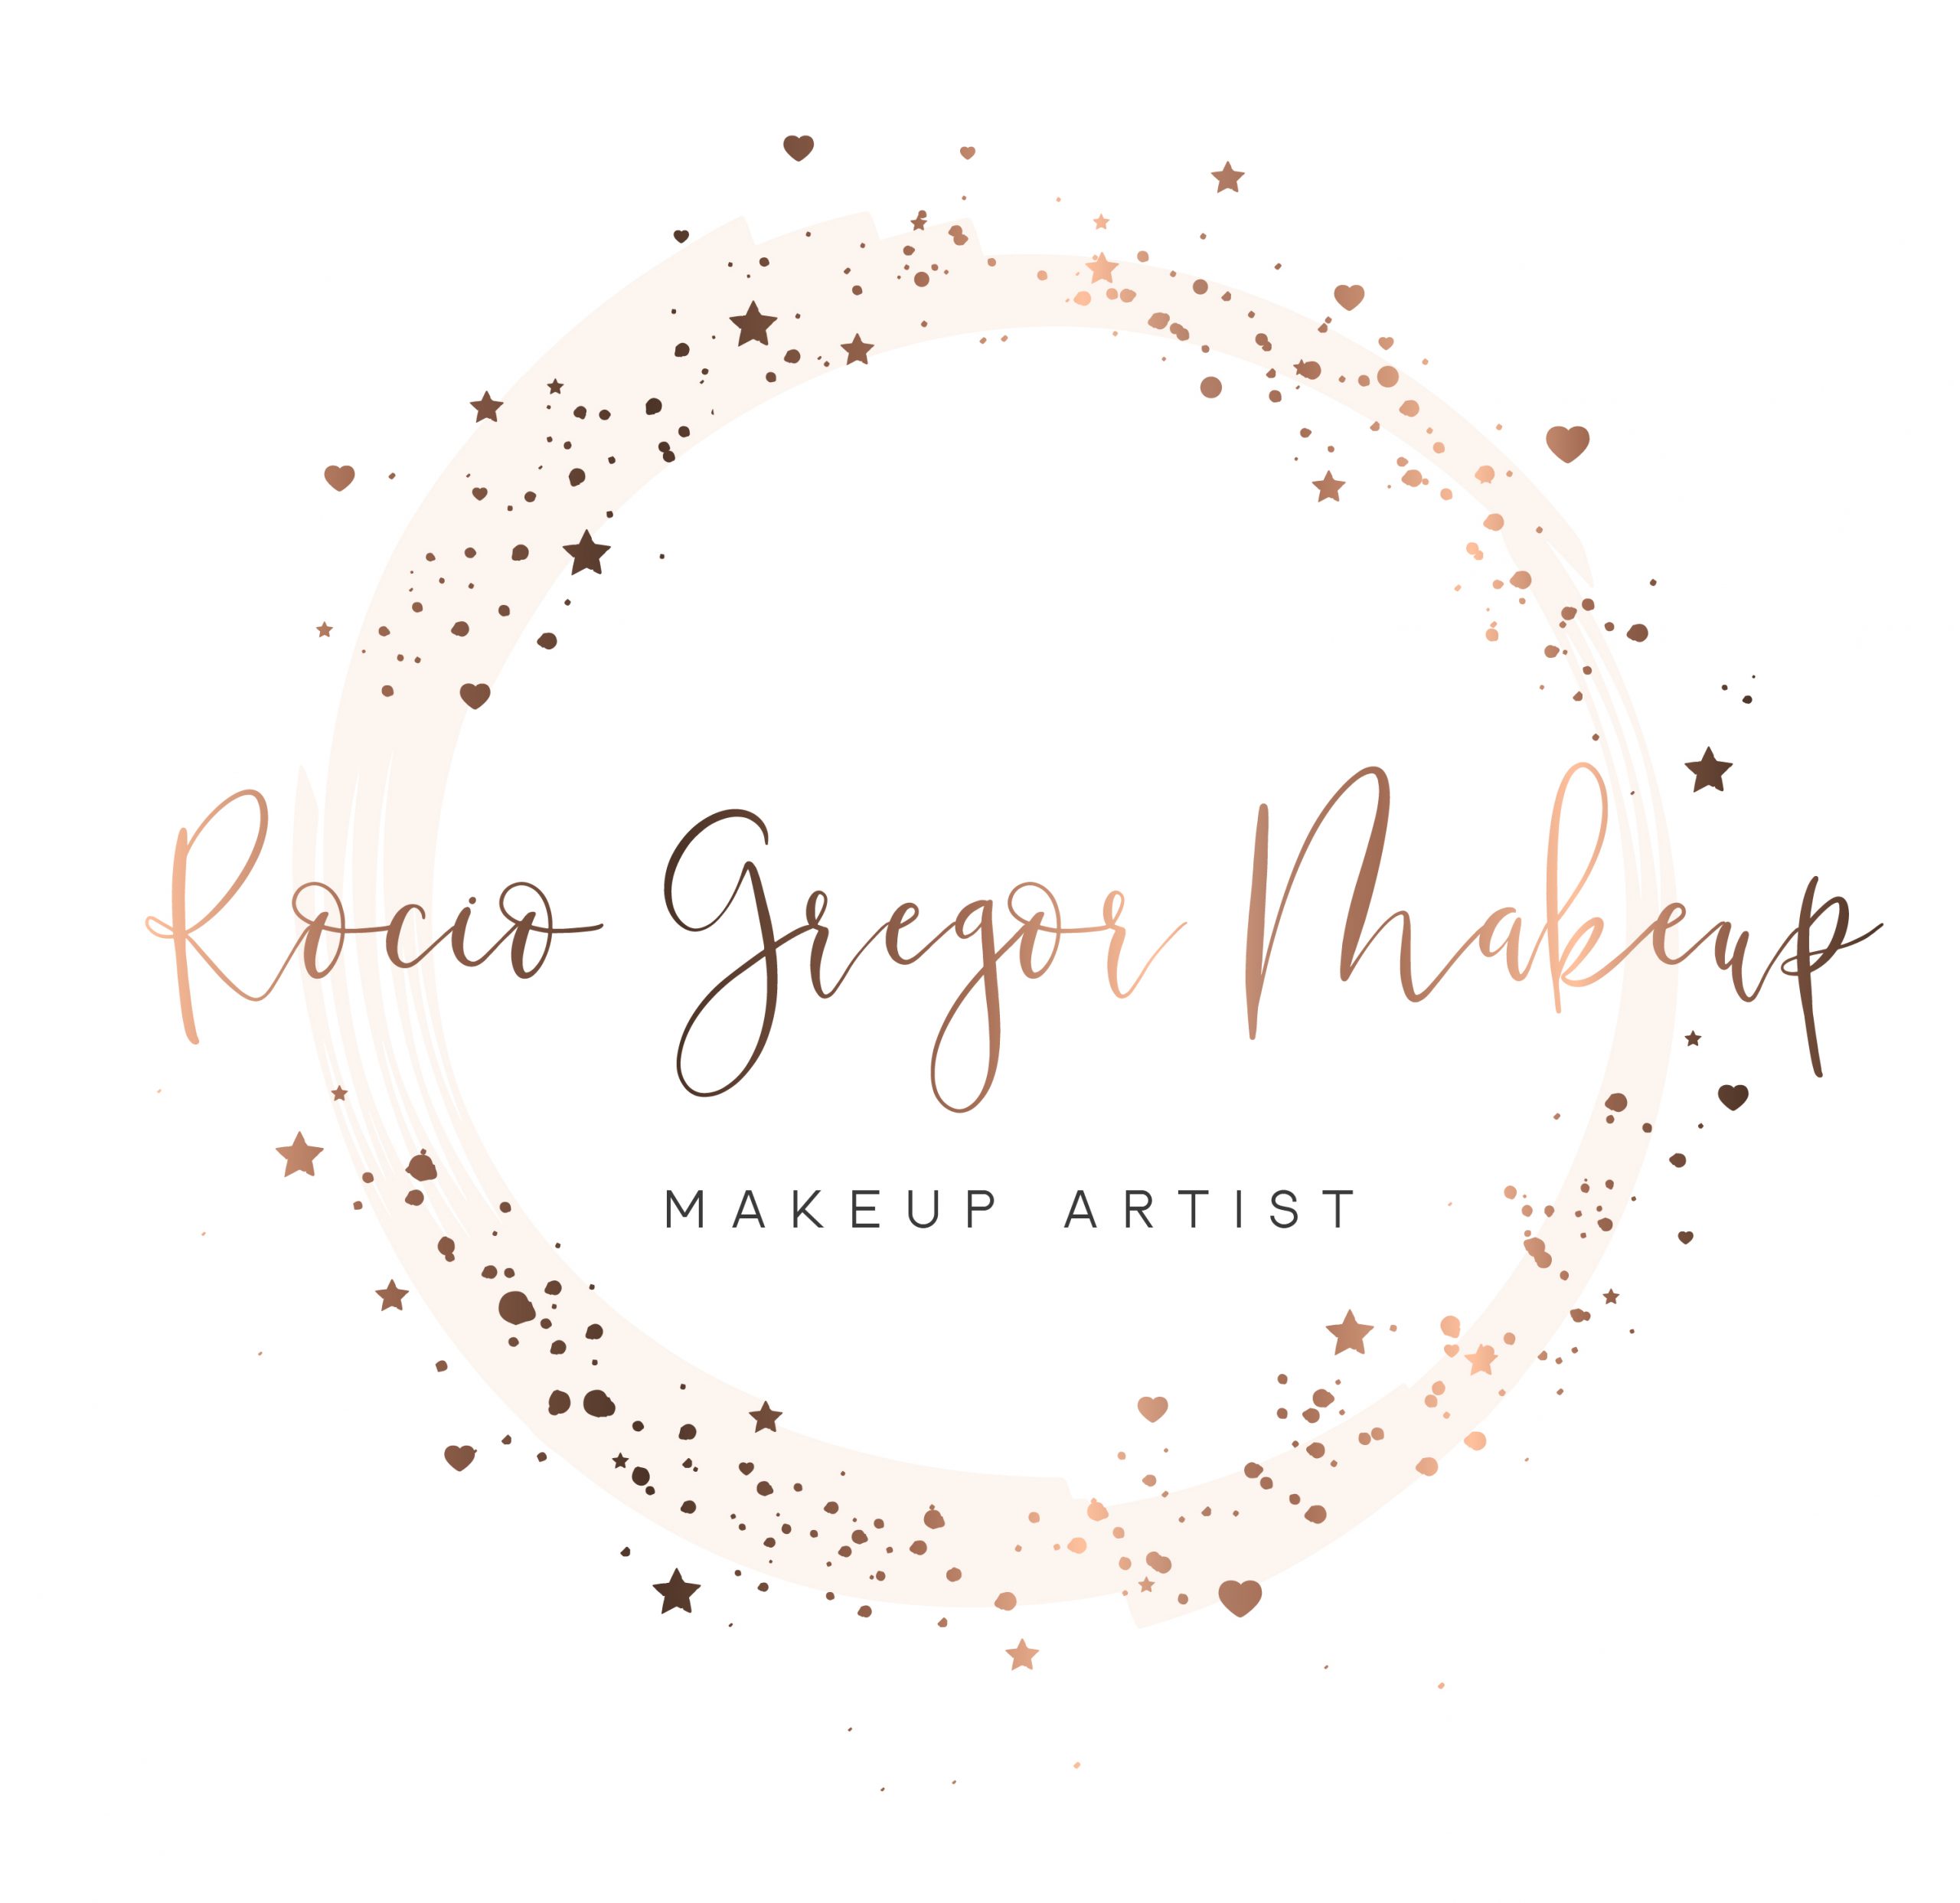 Rocio Gregor Makeup